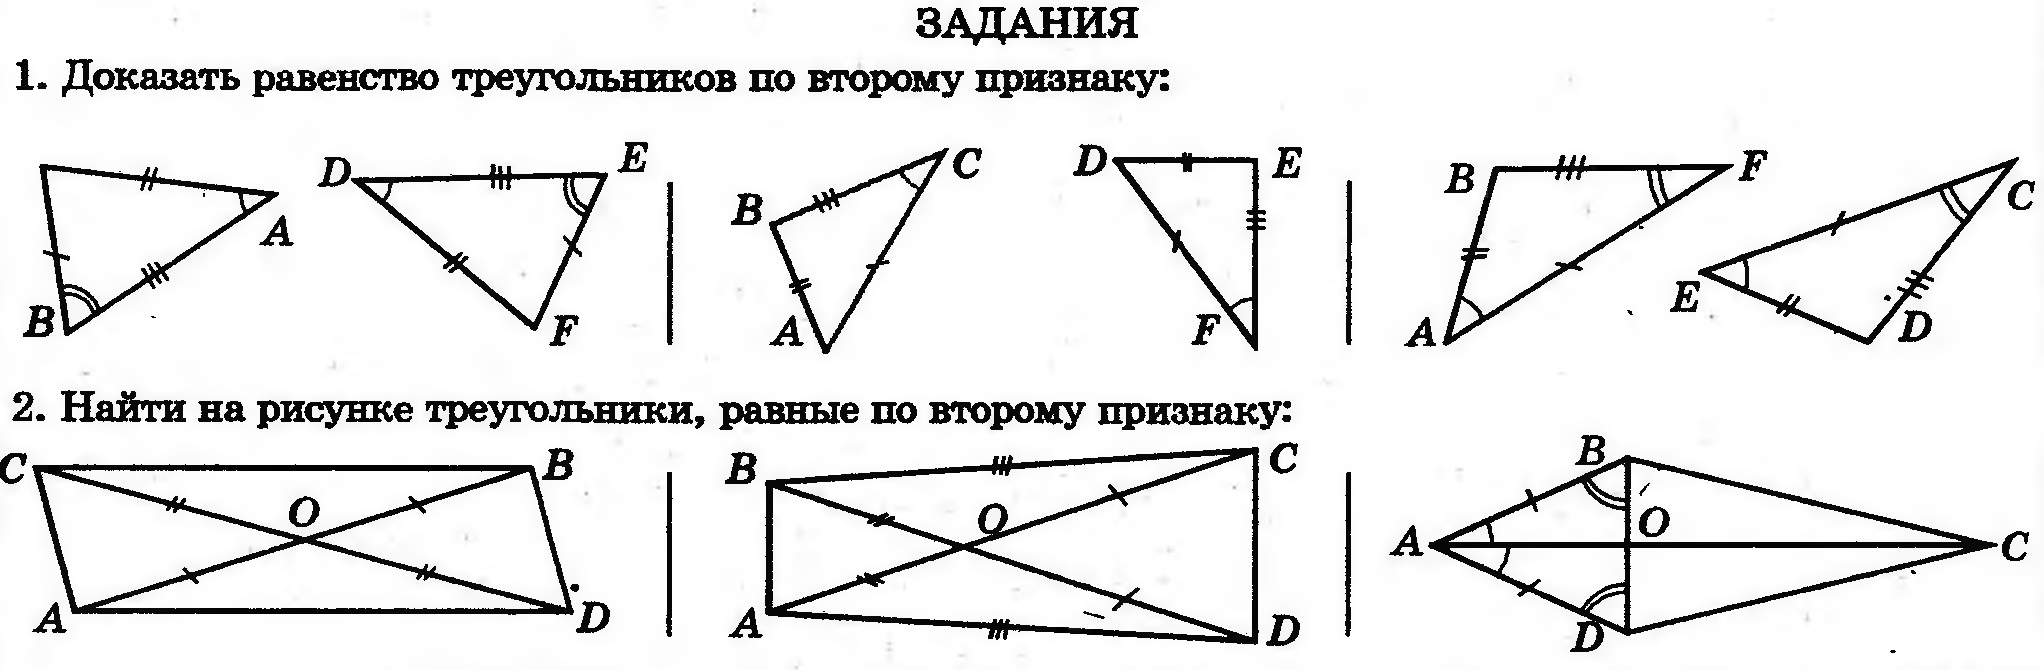 Первое равенство треугольников задачи. 2 Признак равенства треугольников задачи. Задачи на равенство треугольников 7 класс. Задачи на признаки равенства треугольников 7 класс. Задачи на равенство треугольников 7.